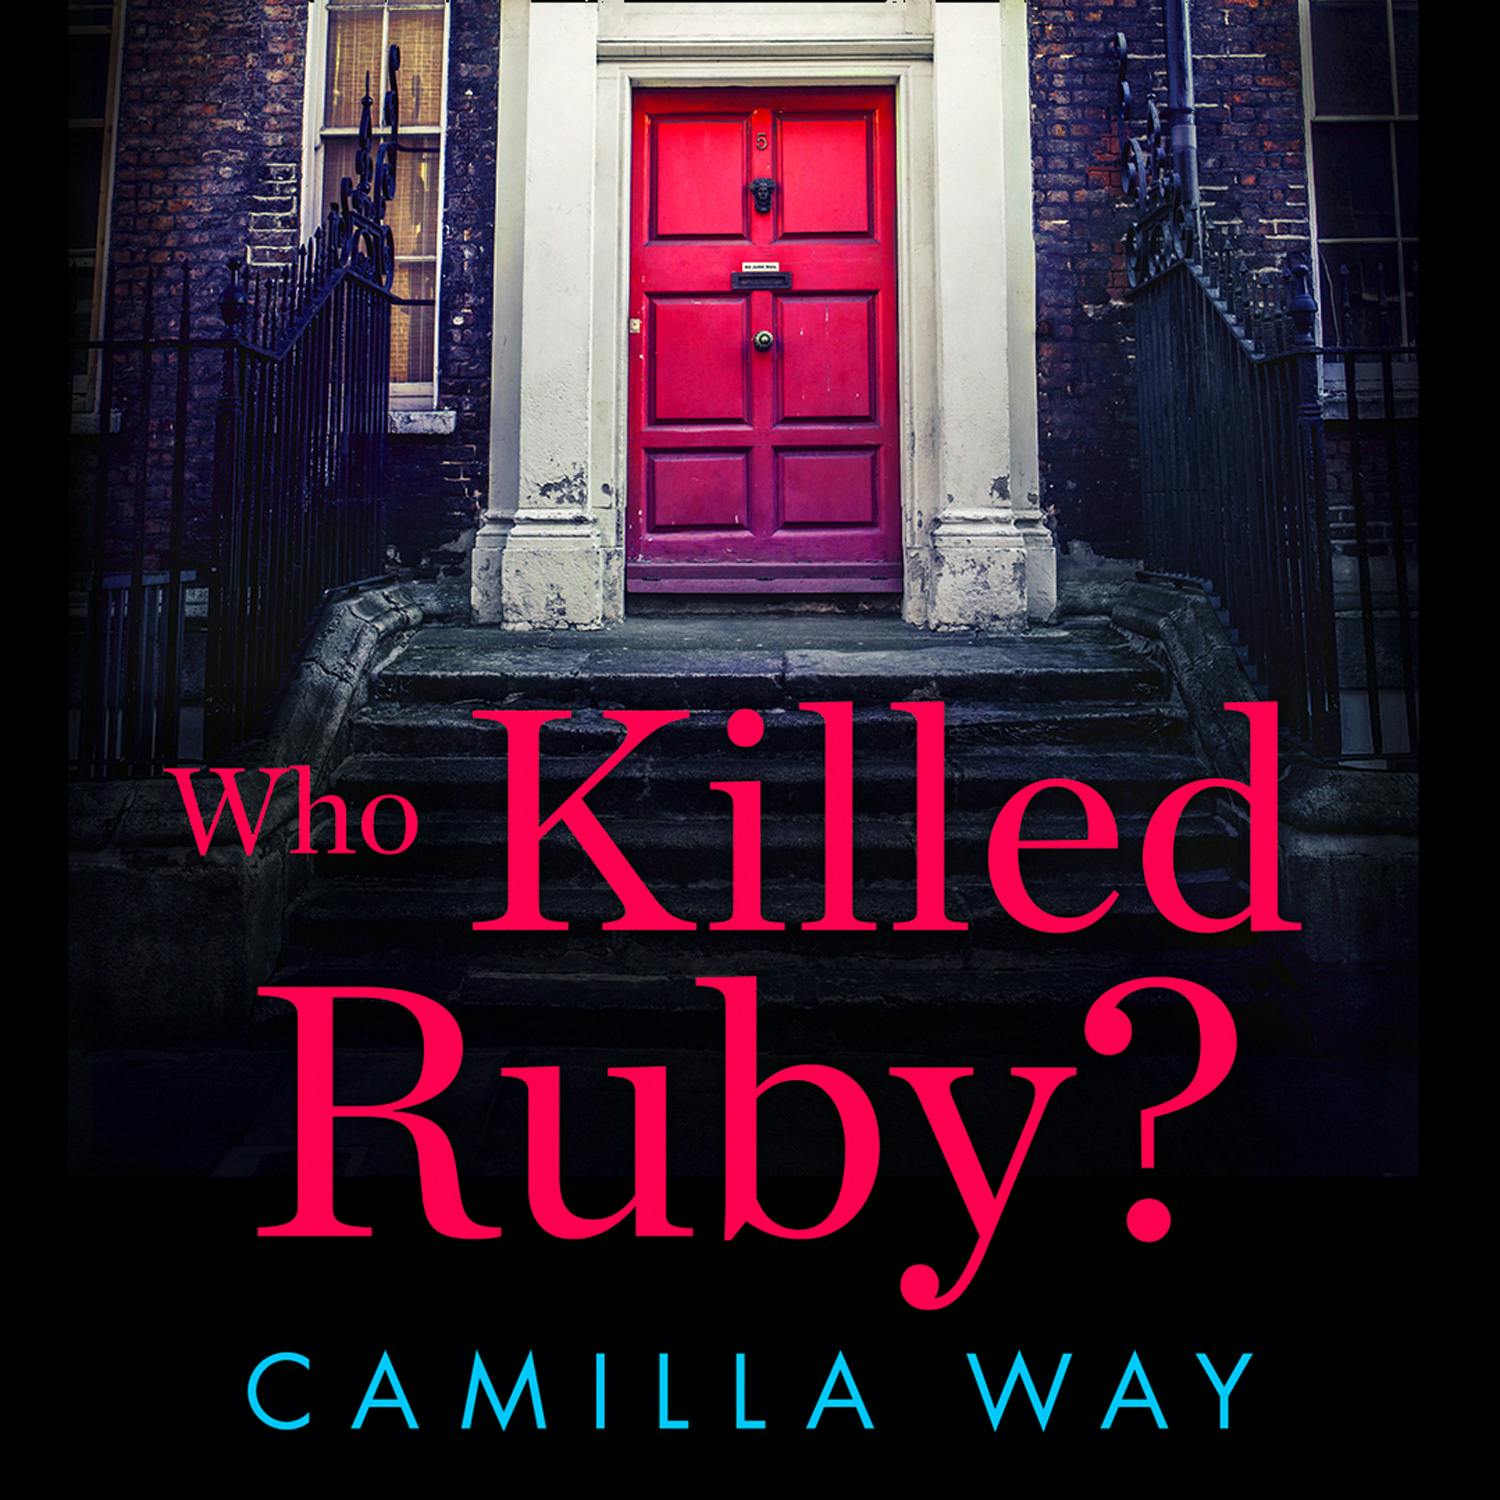 Who Killed Ruby? - Camilla Way